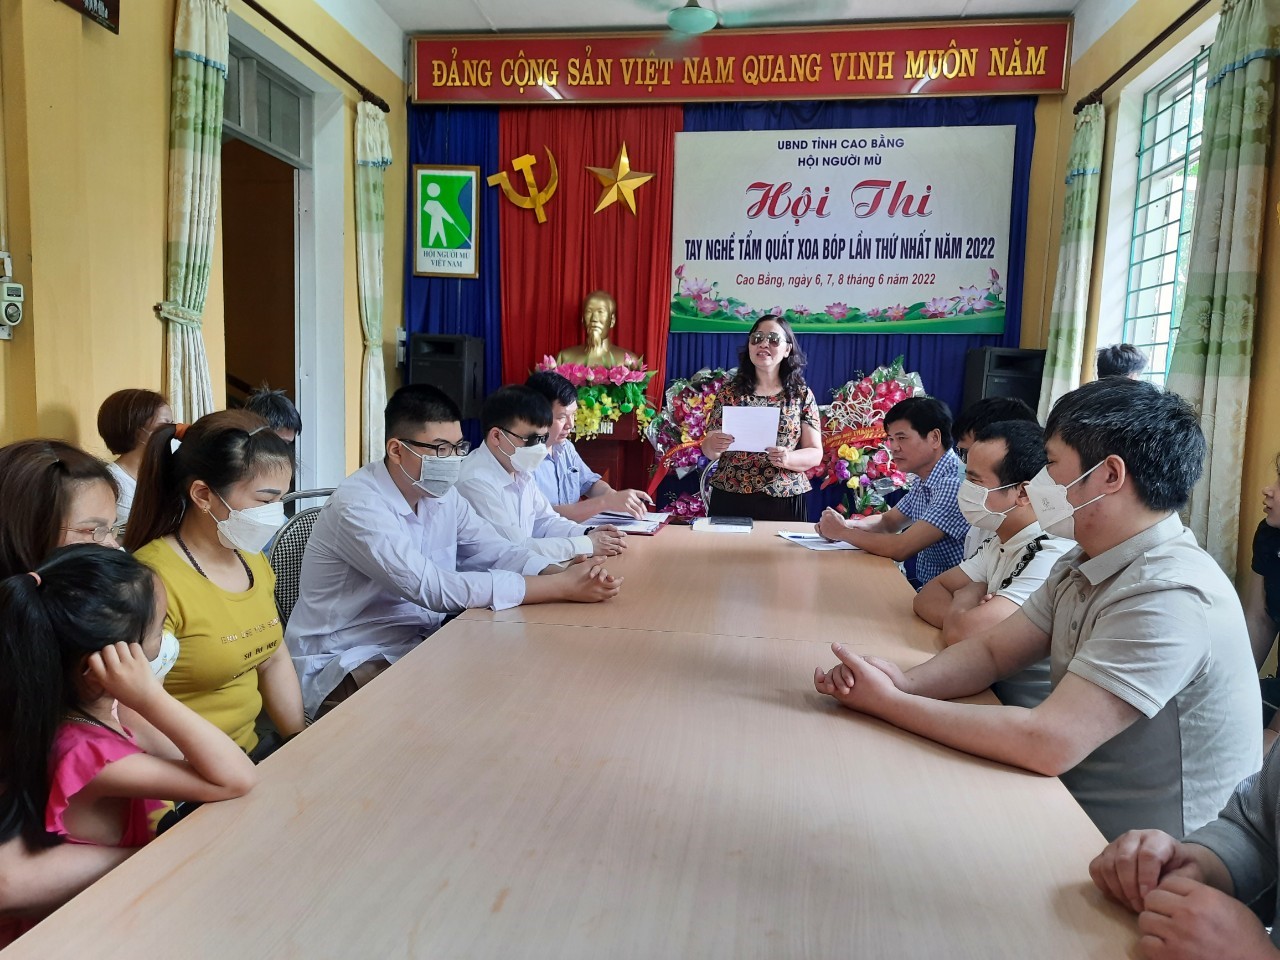 Tỉnh hội Cao Bằng tổ chức hội thi tay nghề Tẩm quất xoa bóp lần thứ nhất 